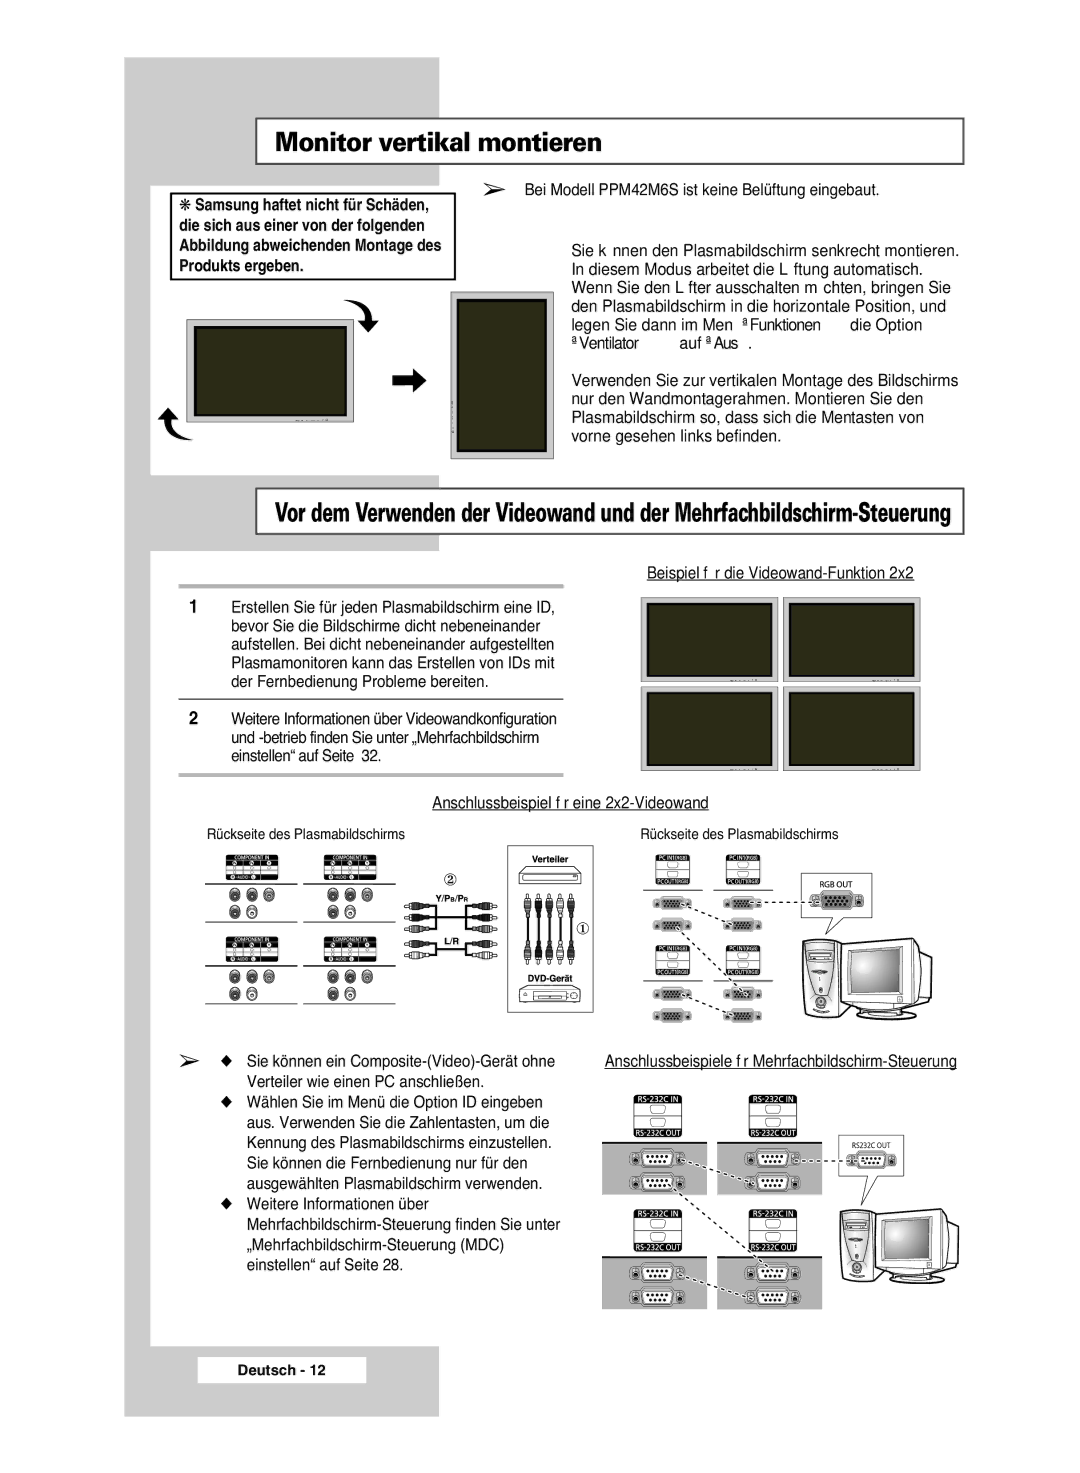 Samsung PPM42M6SSX/EDC manual Bei Modell PPM42M6S ist keine Belüftung eingebaut, Sie können ein Composite-Video-Gerät ohne 